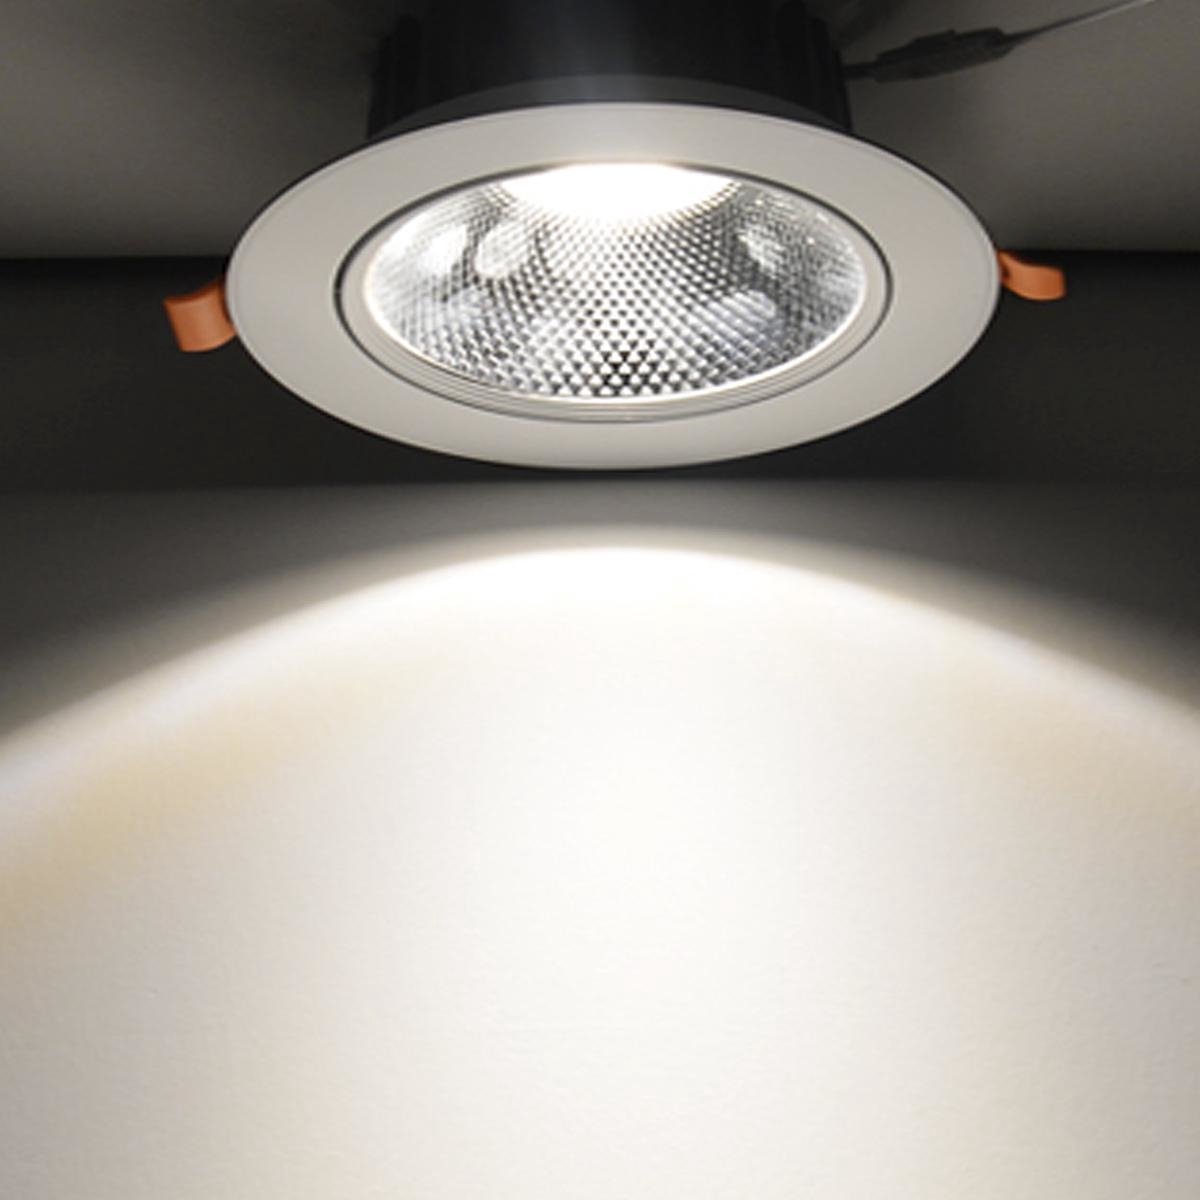 LED inbouwspot Dimbaar - 5W vervangt 50W - 4000K helder wit licht - Kantelbaar